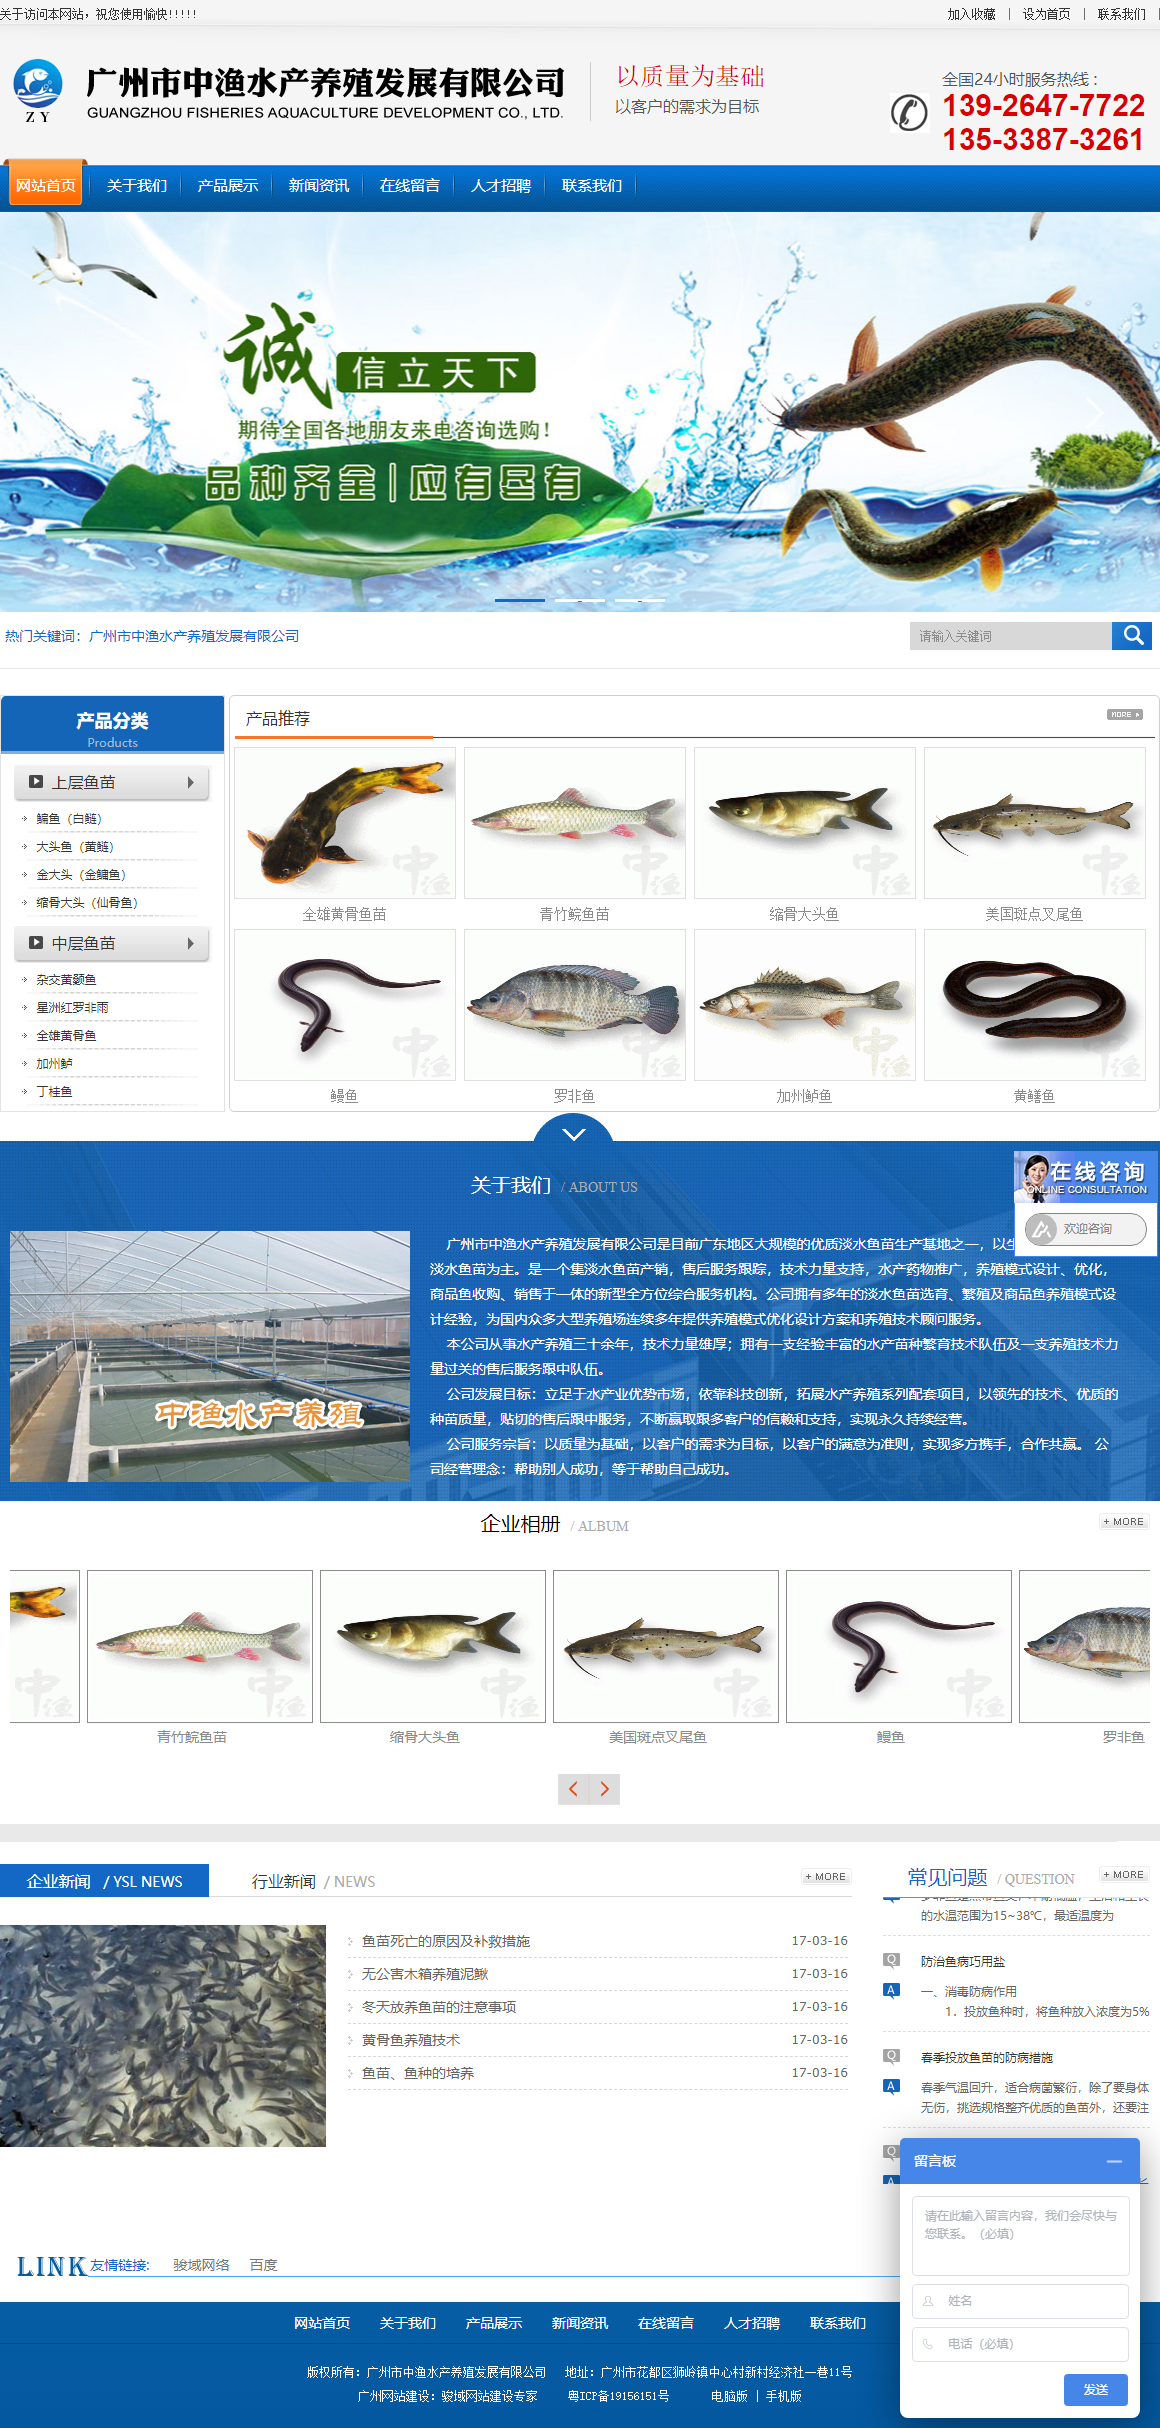 广州市中渔水产养殖发展有限公司网站案例